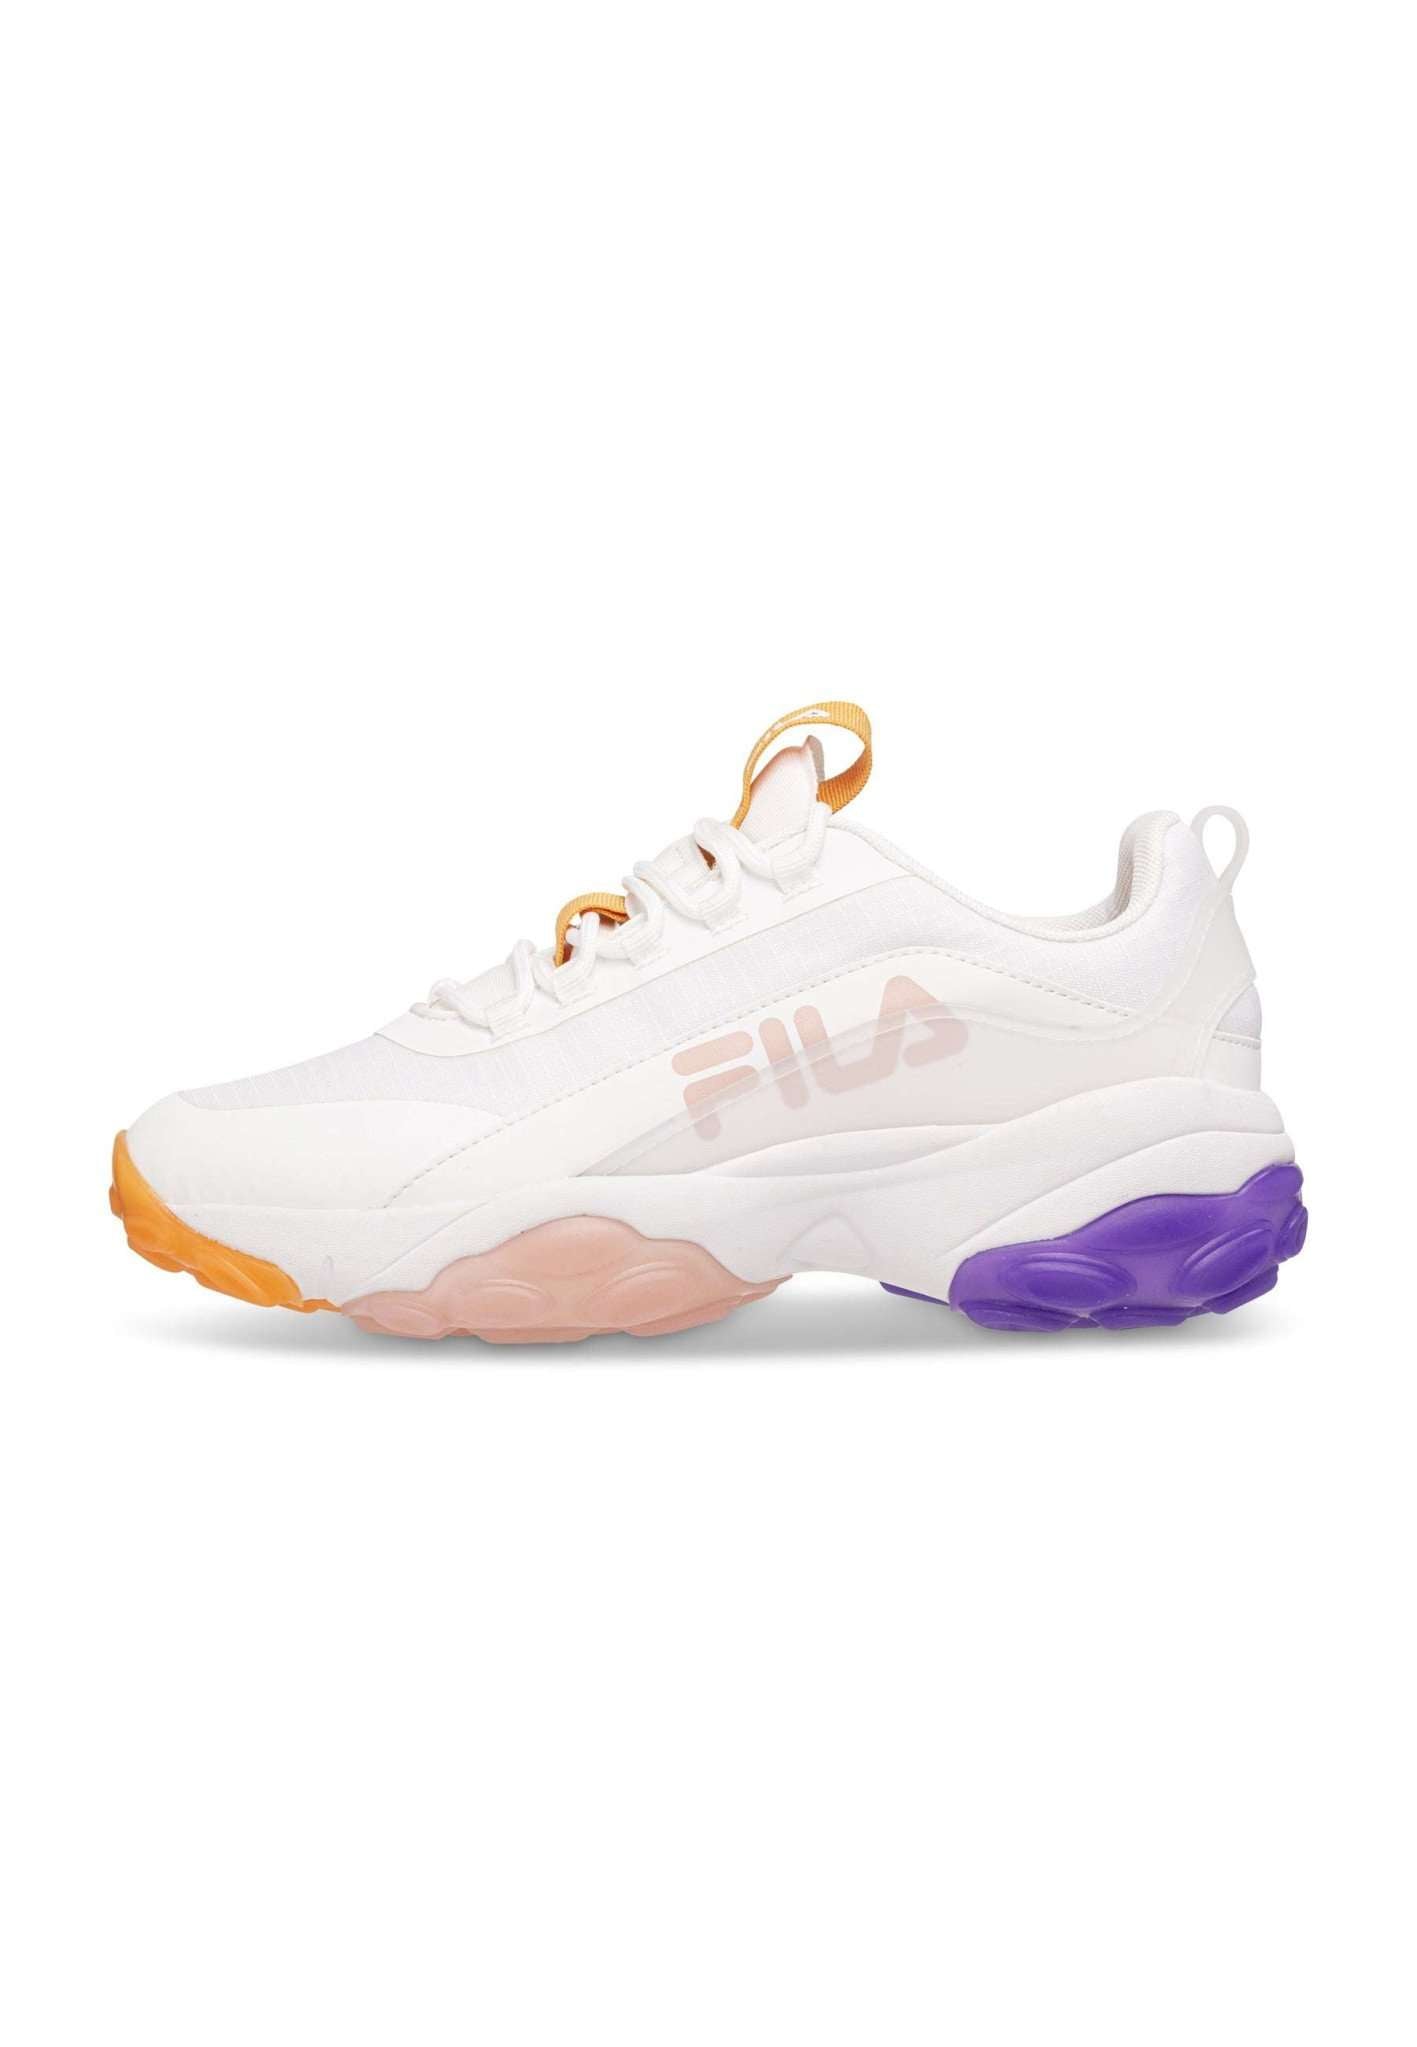 Fila Loligo Logo Wmn in White-Apricot Tan Sneakers Fila   